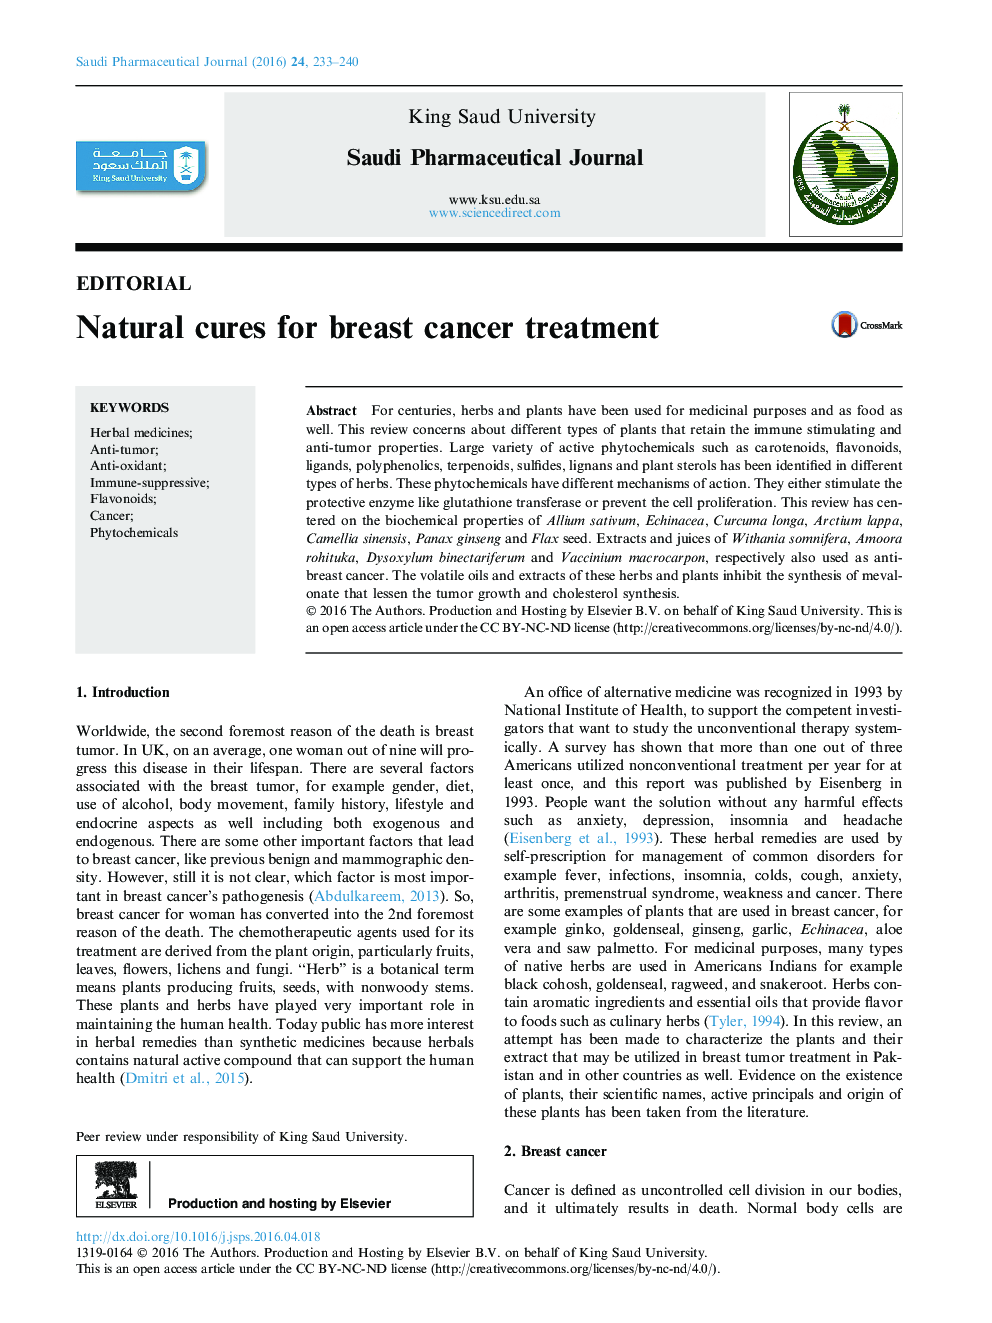 درمان های طبیعی برای درمان سرطان پستان 